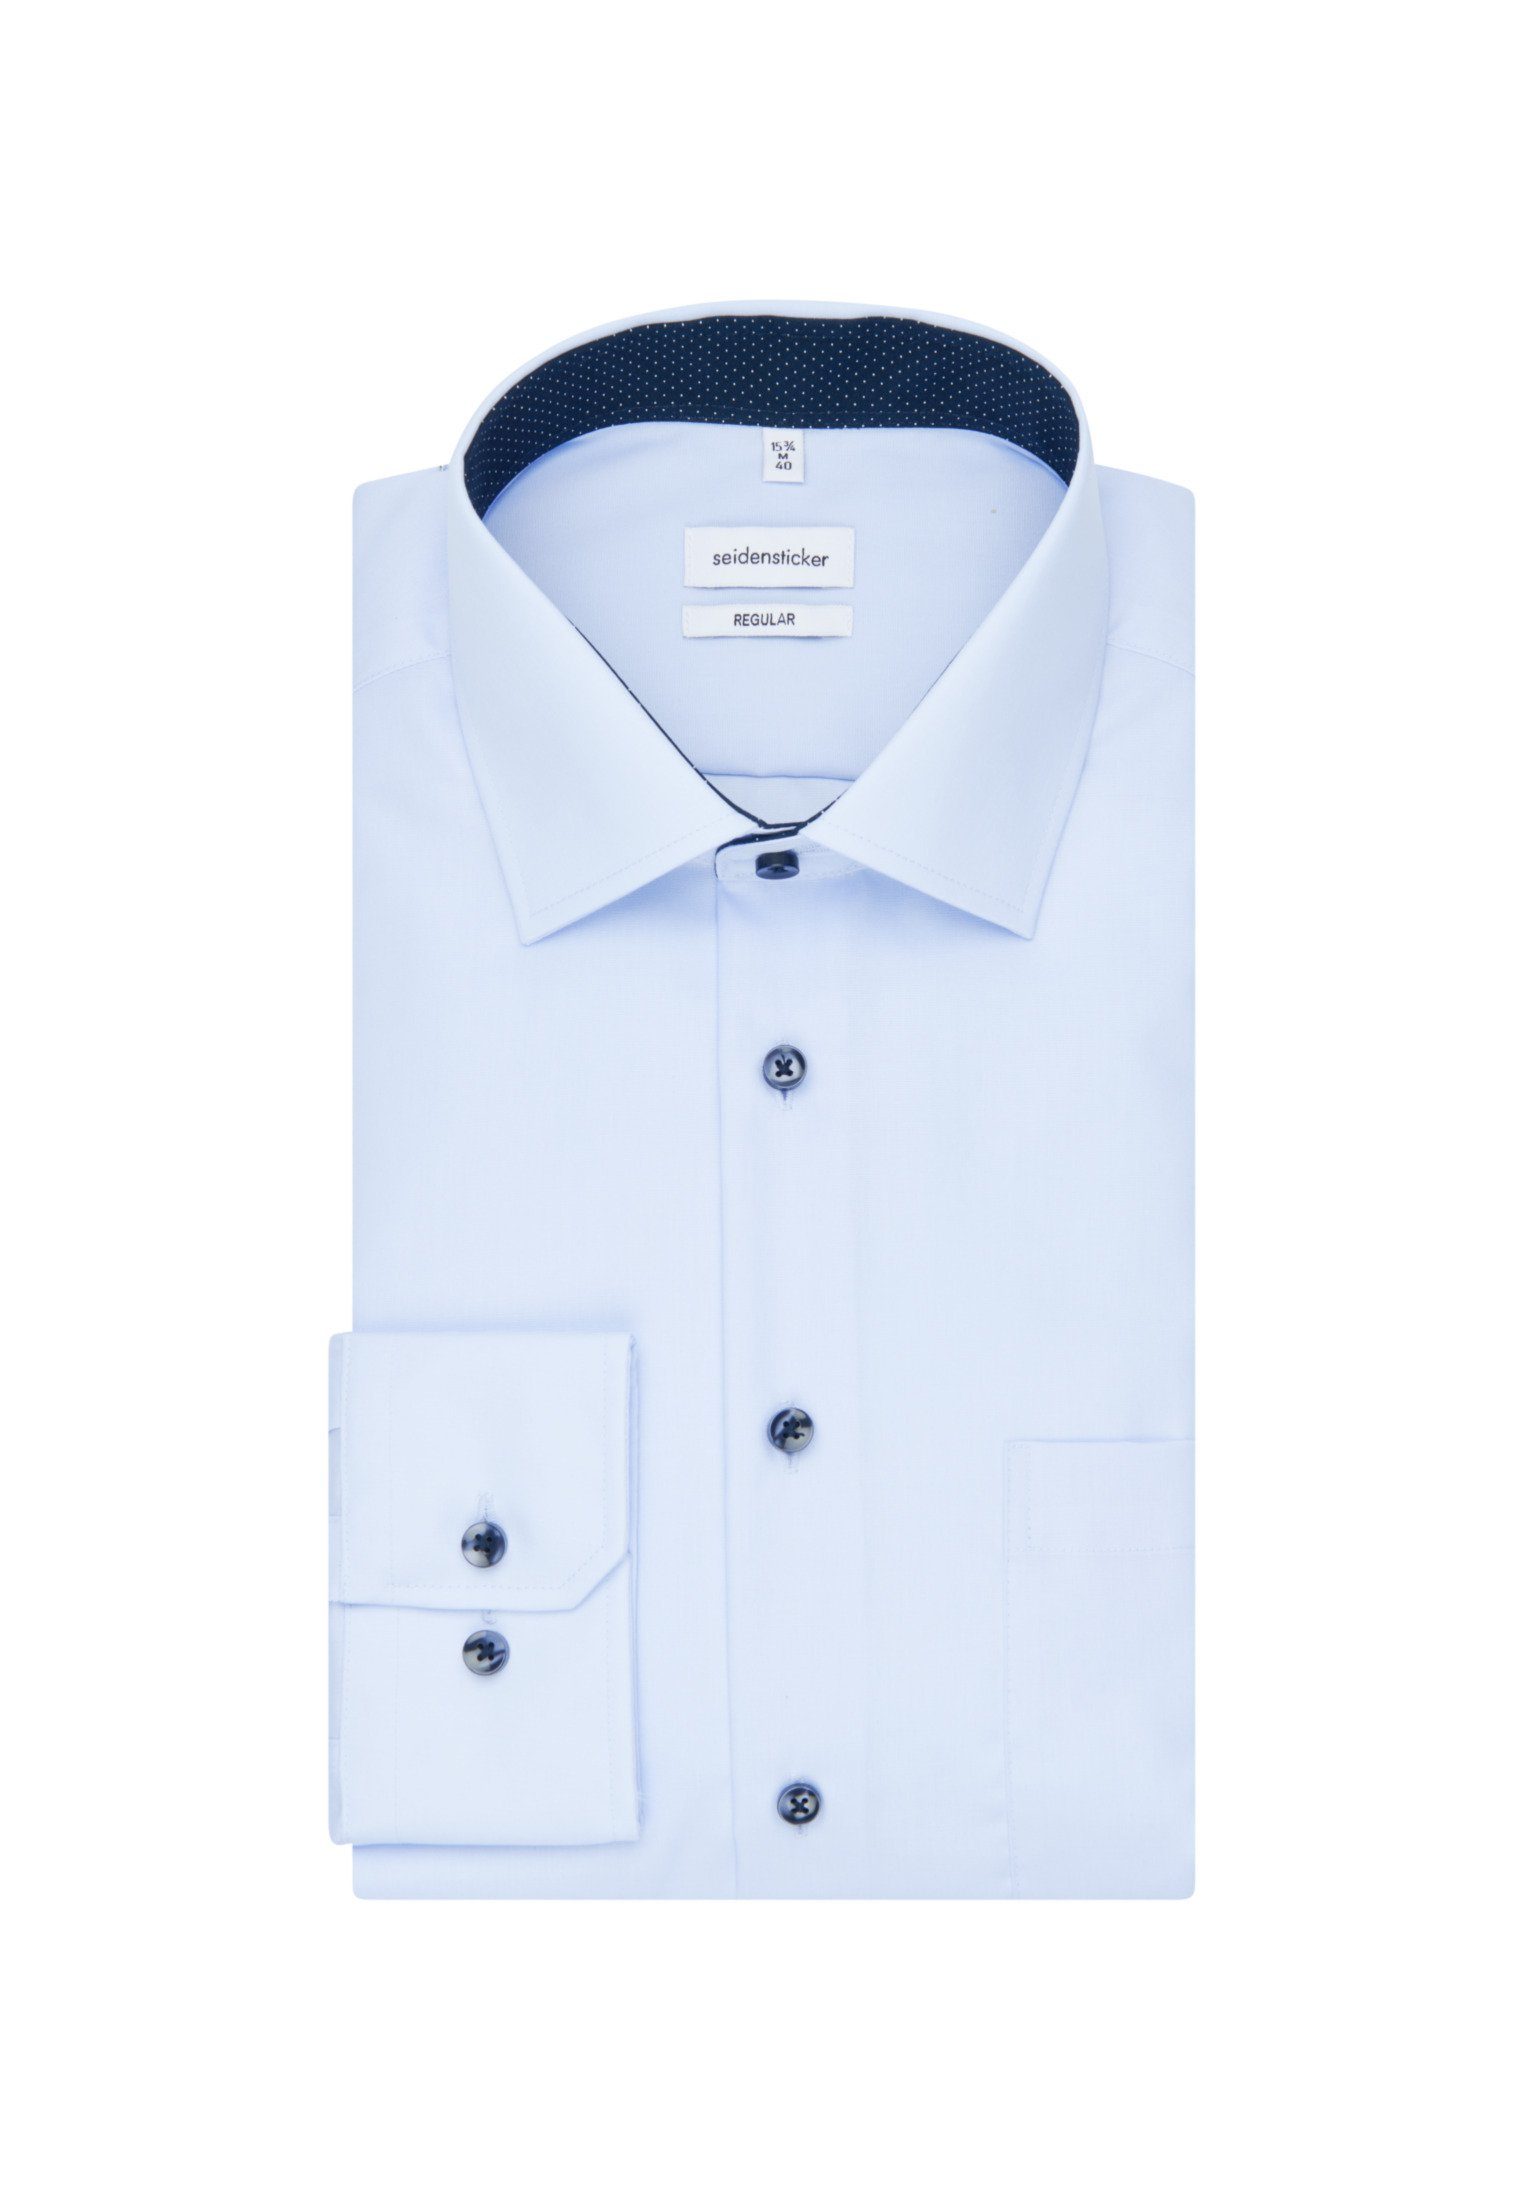 Herren Hemden seidensticker Businesshemd Regular Regular Extra langer Arm Kentkragen Uni